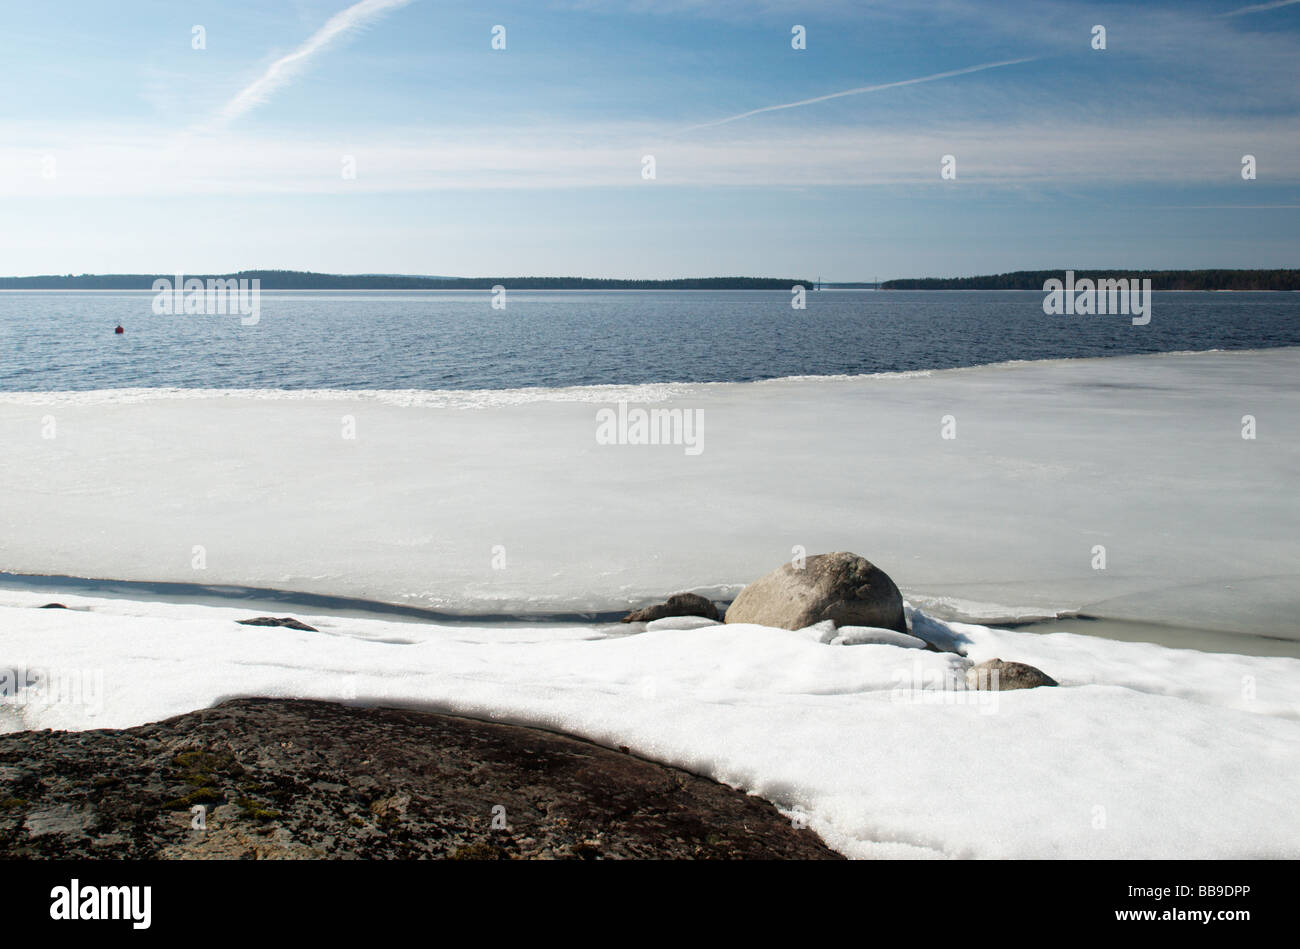 Meting ghiaccio sulla riva del lago, Paijanne, Finlandia Foto Stock